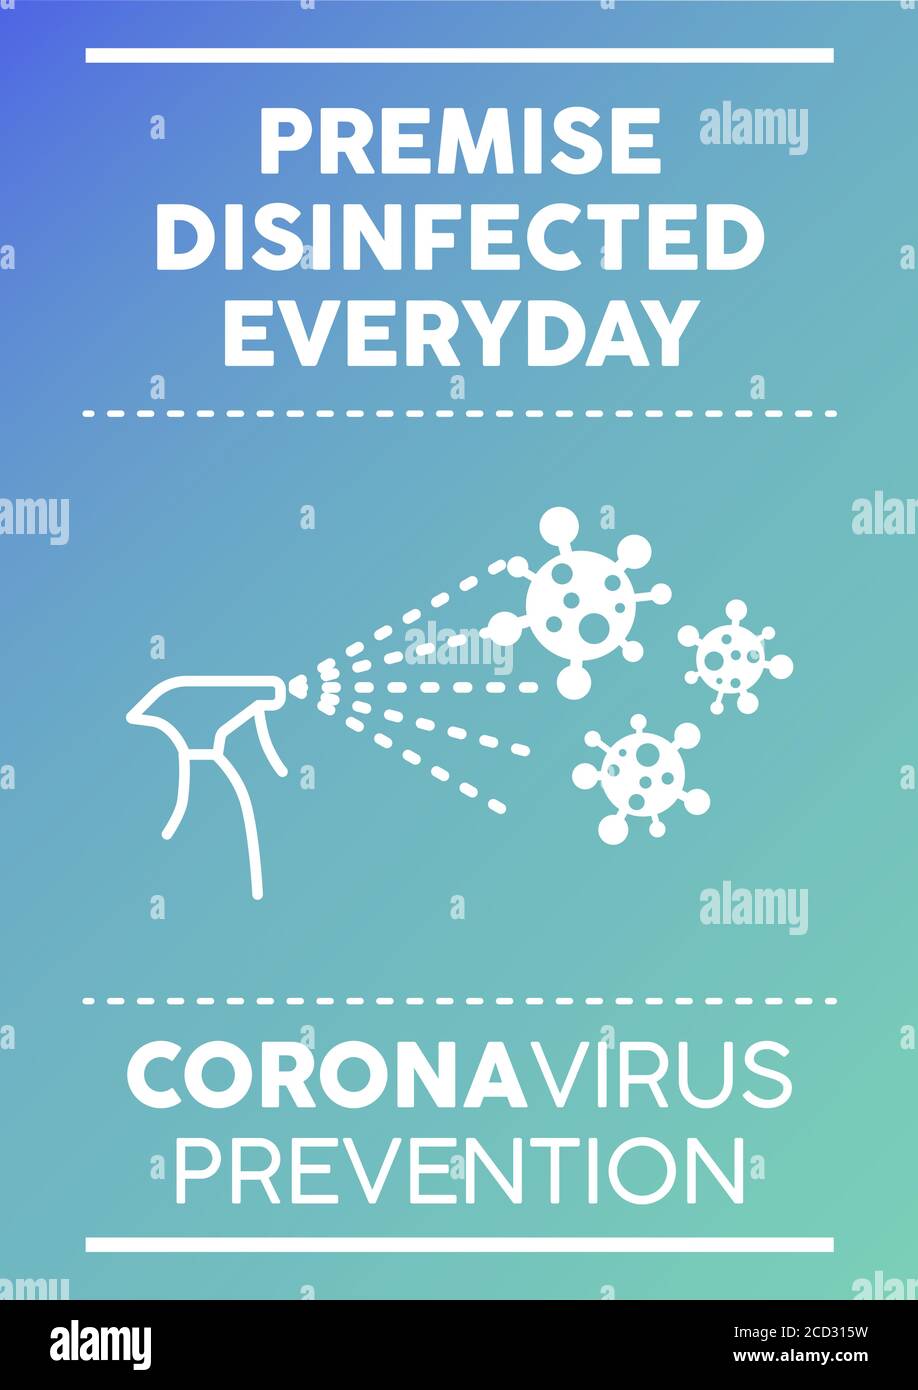 Póster diario de la premisa desinfectada. Prevención del coronavirus. Ilustración del Vector